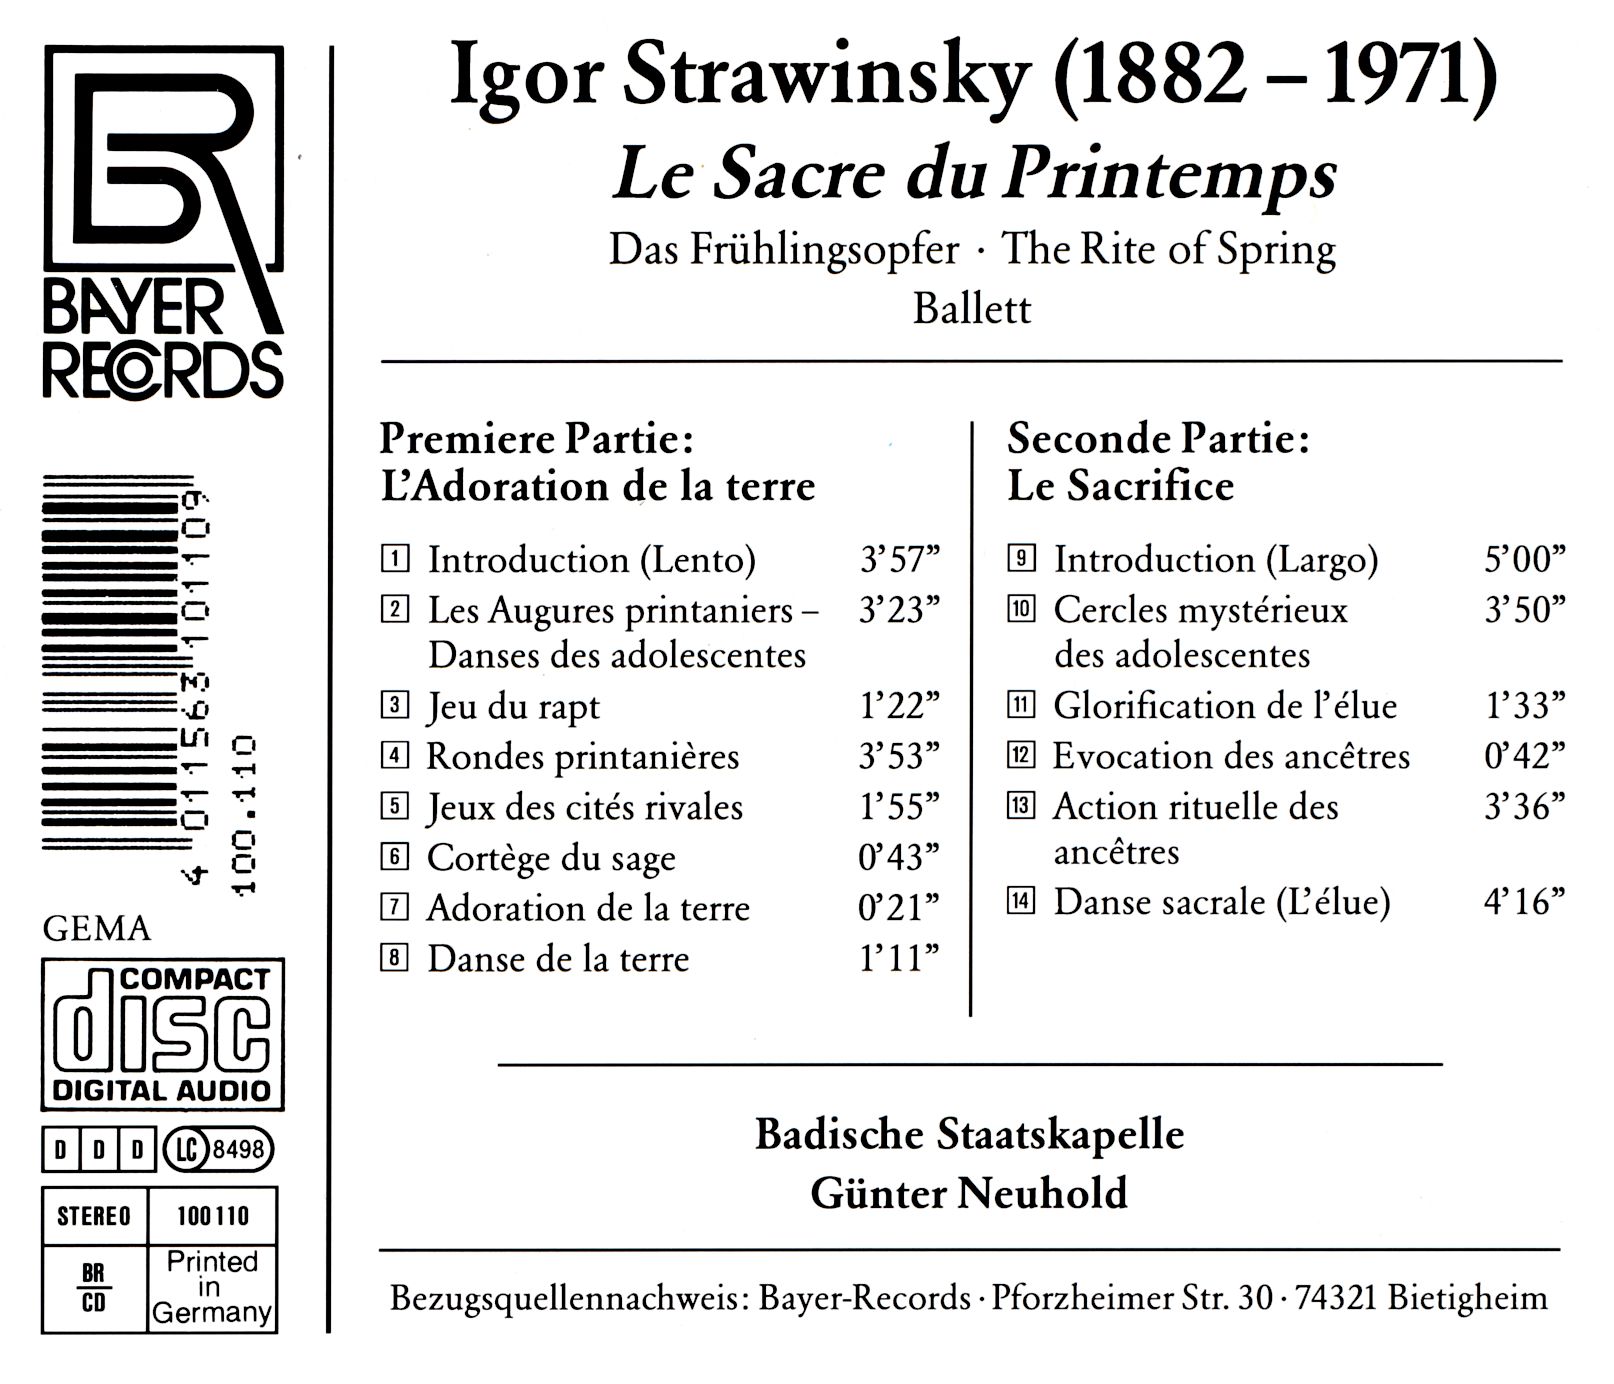 Igor Strawinsky - Le Sacre du Printemps